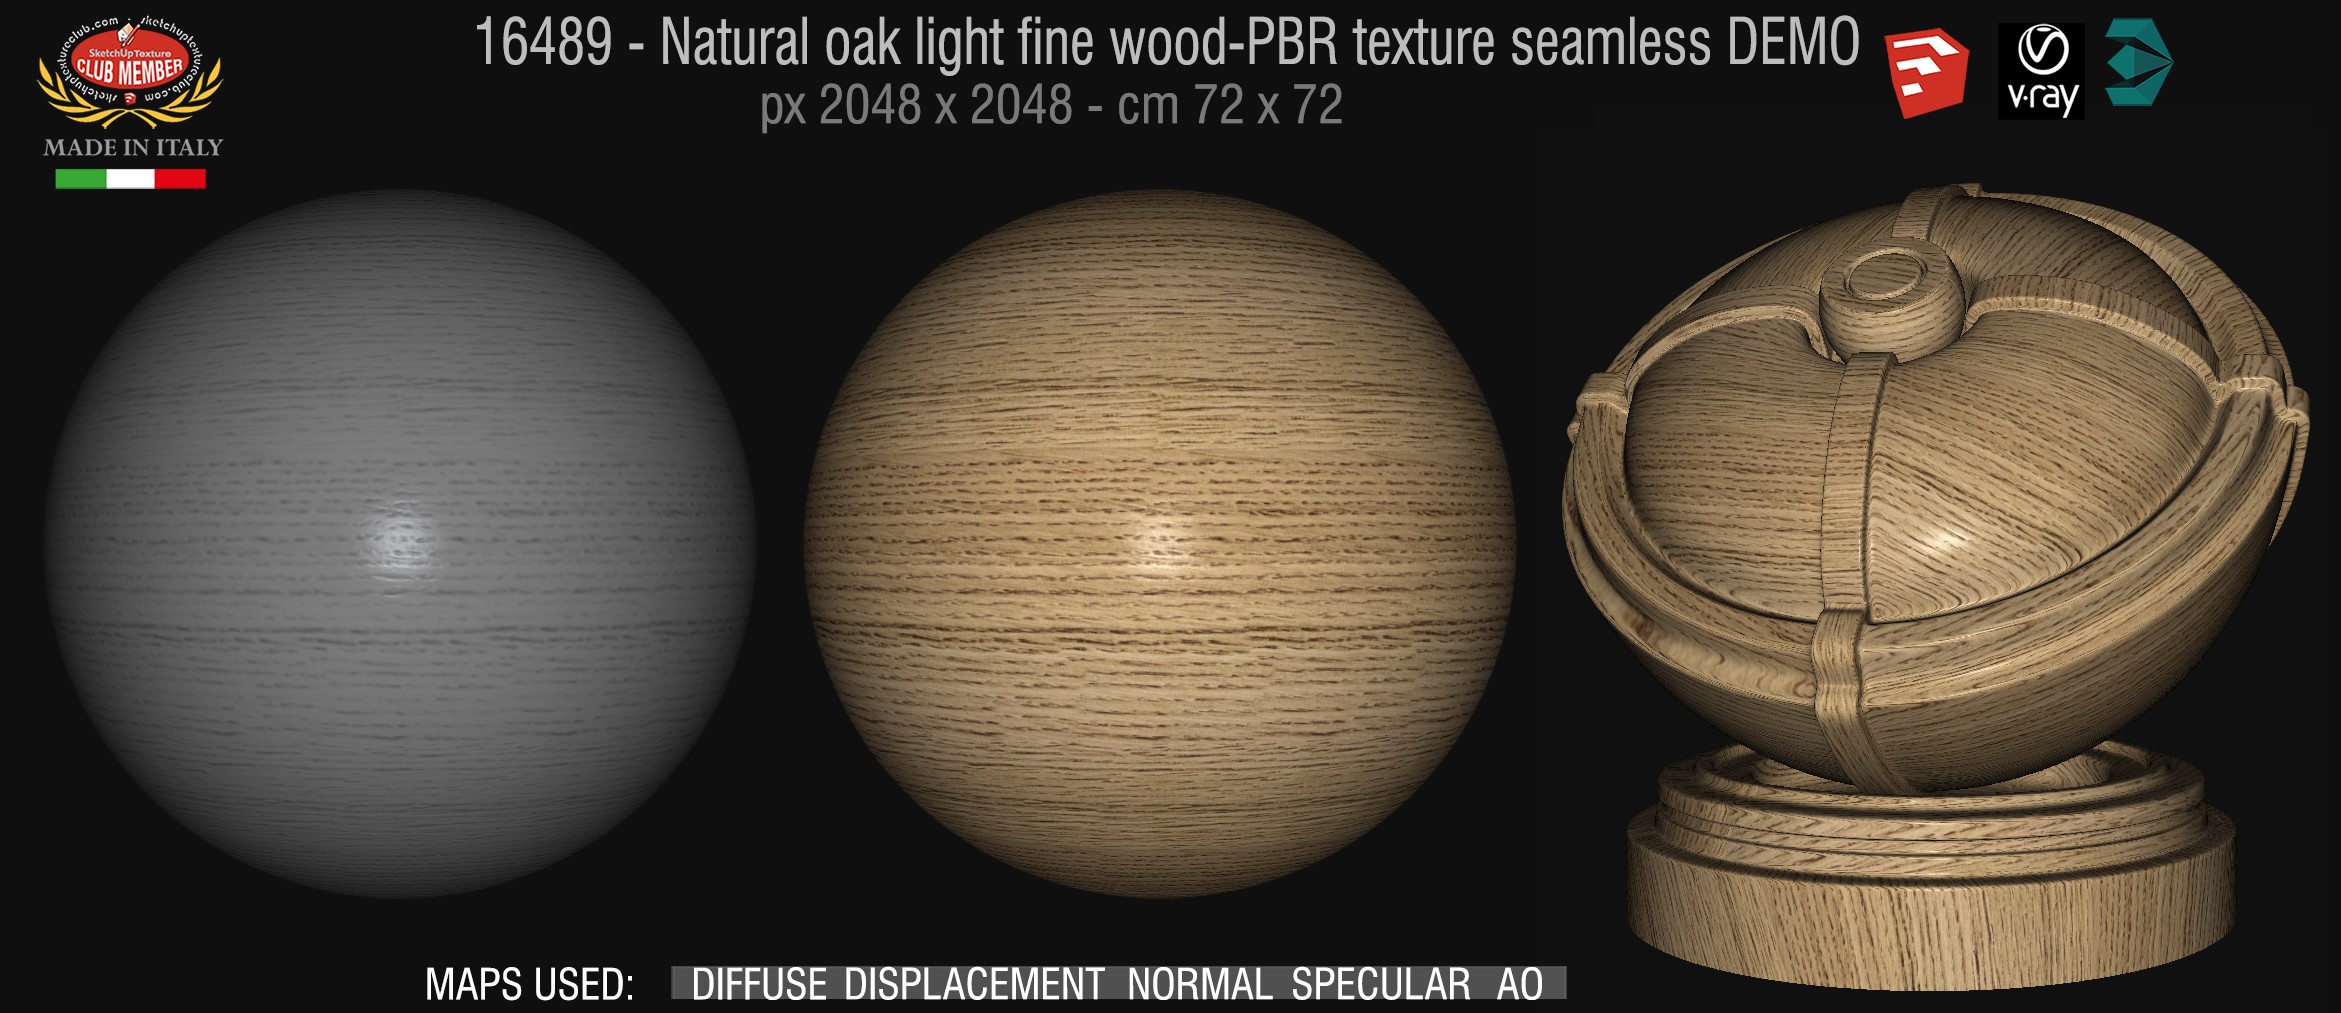 16489 Natural oak light fine wood-PBR texture seamless DEMO